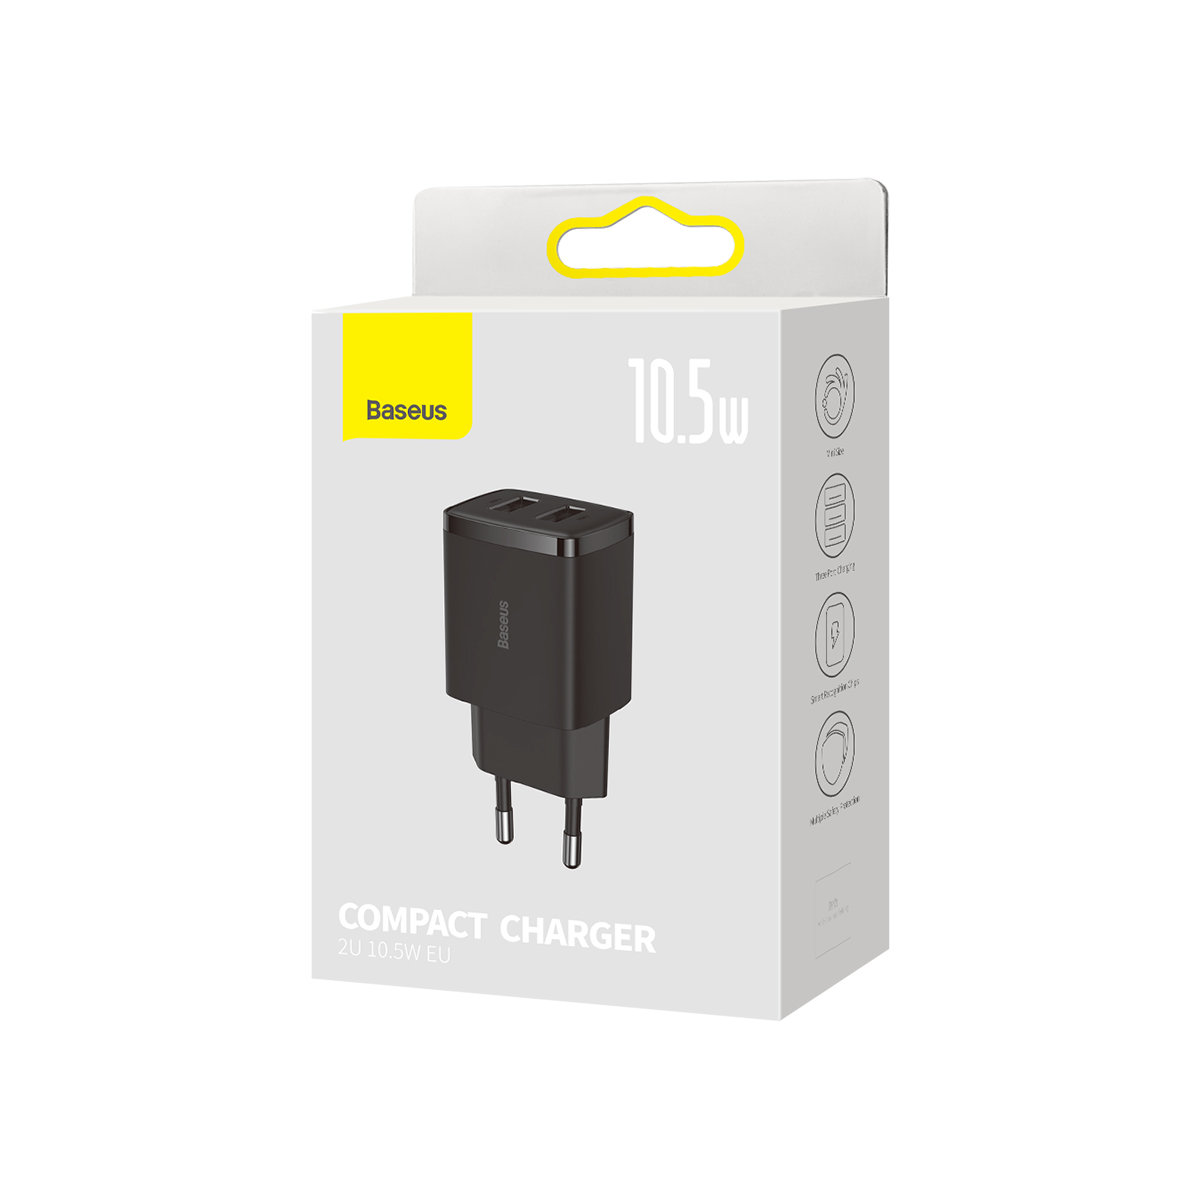 adowarka sieciowa Baseus Compact 2x USB 10.5W CCXJ010202 czarna HUAWEI Nova 2 / 4